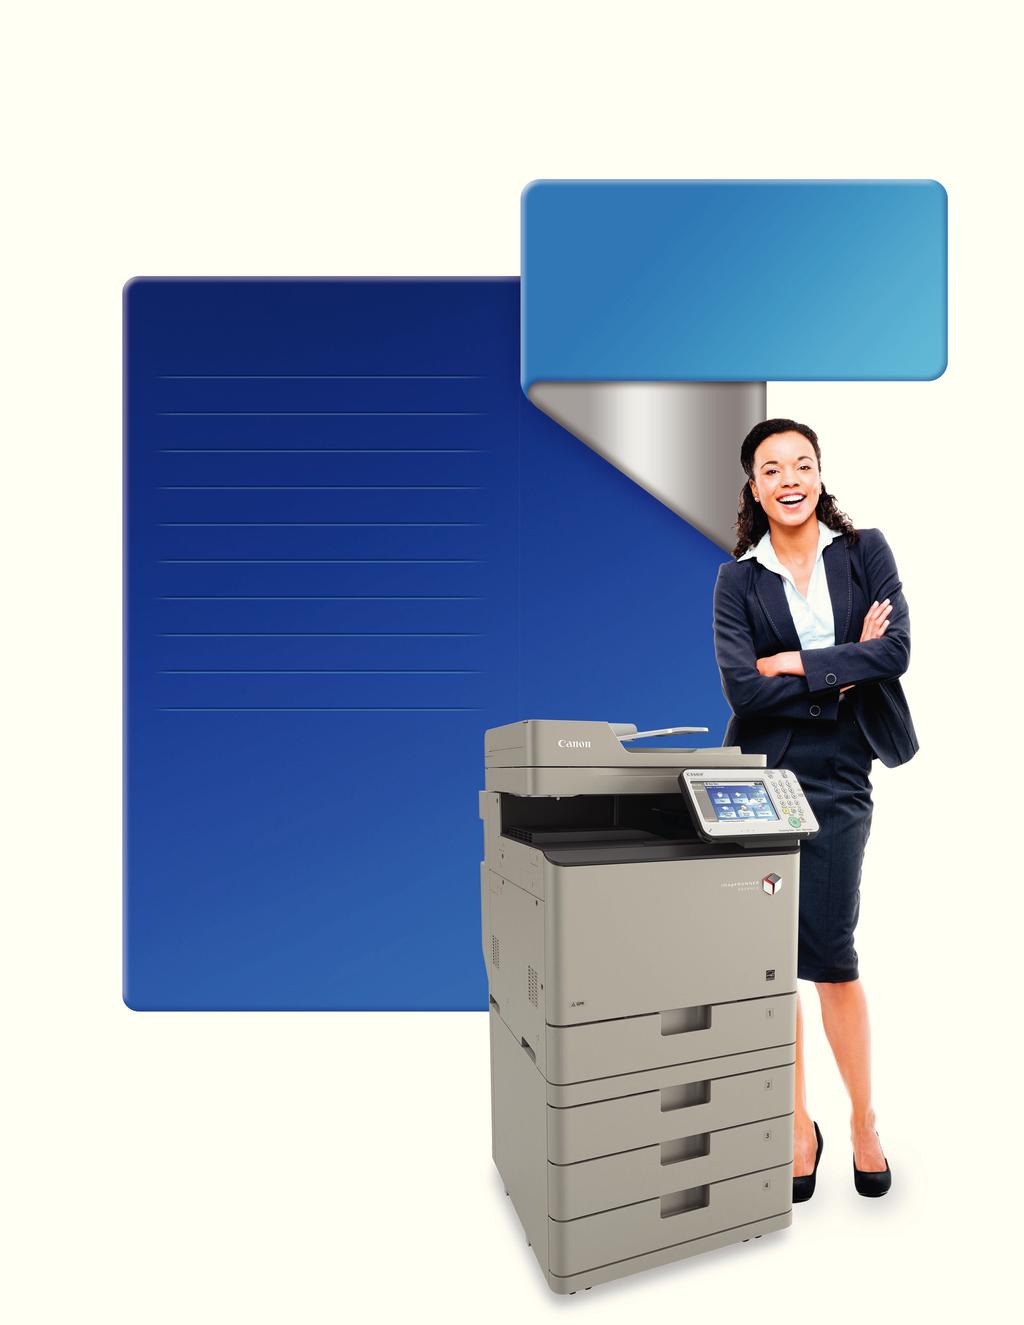 Características estándar Copiado/Impresión/Envío/Fax Diseñada para Grupos de trabajo ocupados que requieren ujos de trabajo conectados en un espacio compacto Color/blanco y negro Impresión de hasta